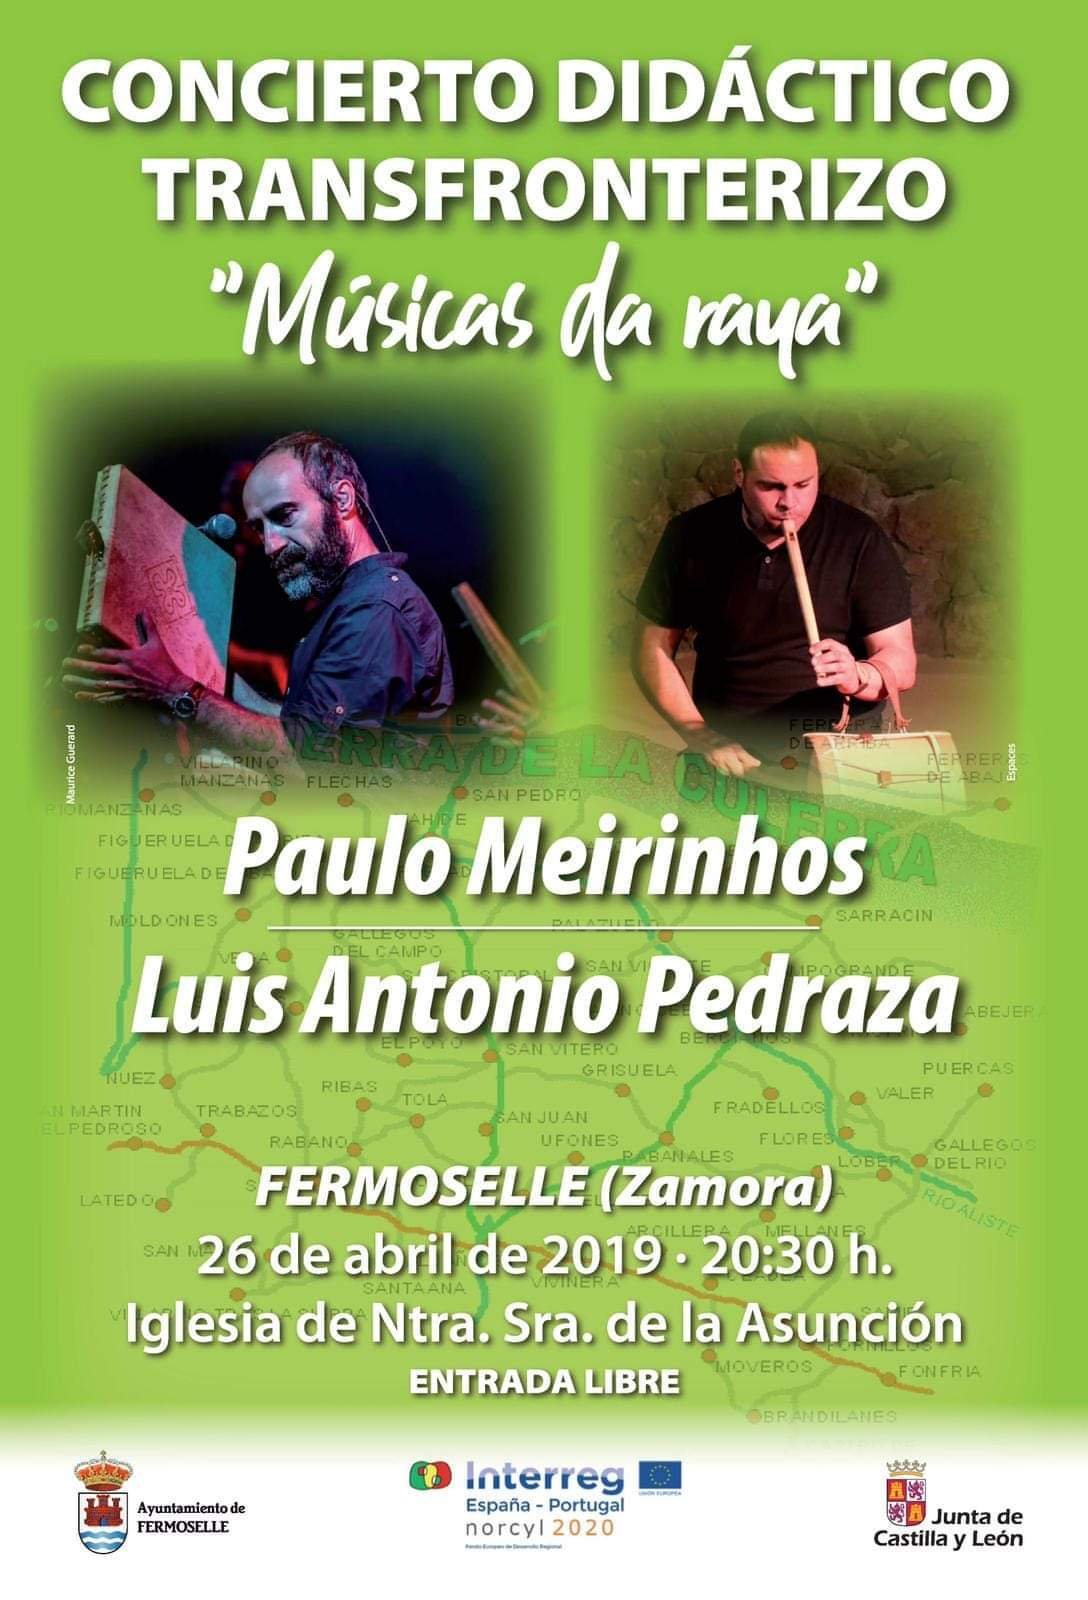 Concierto didáctico transfronterizo 2019 - Fermoselle (Zamora)